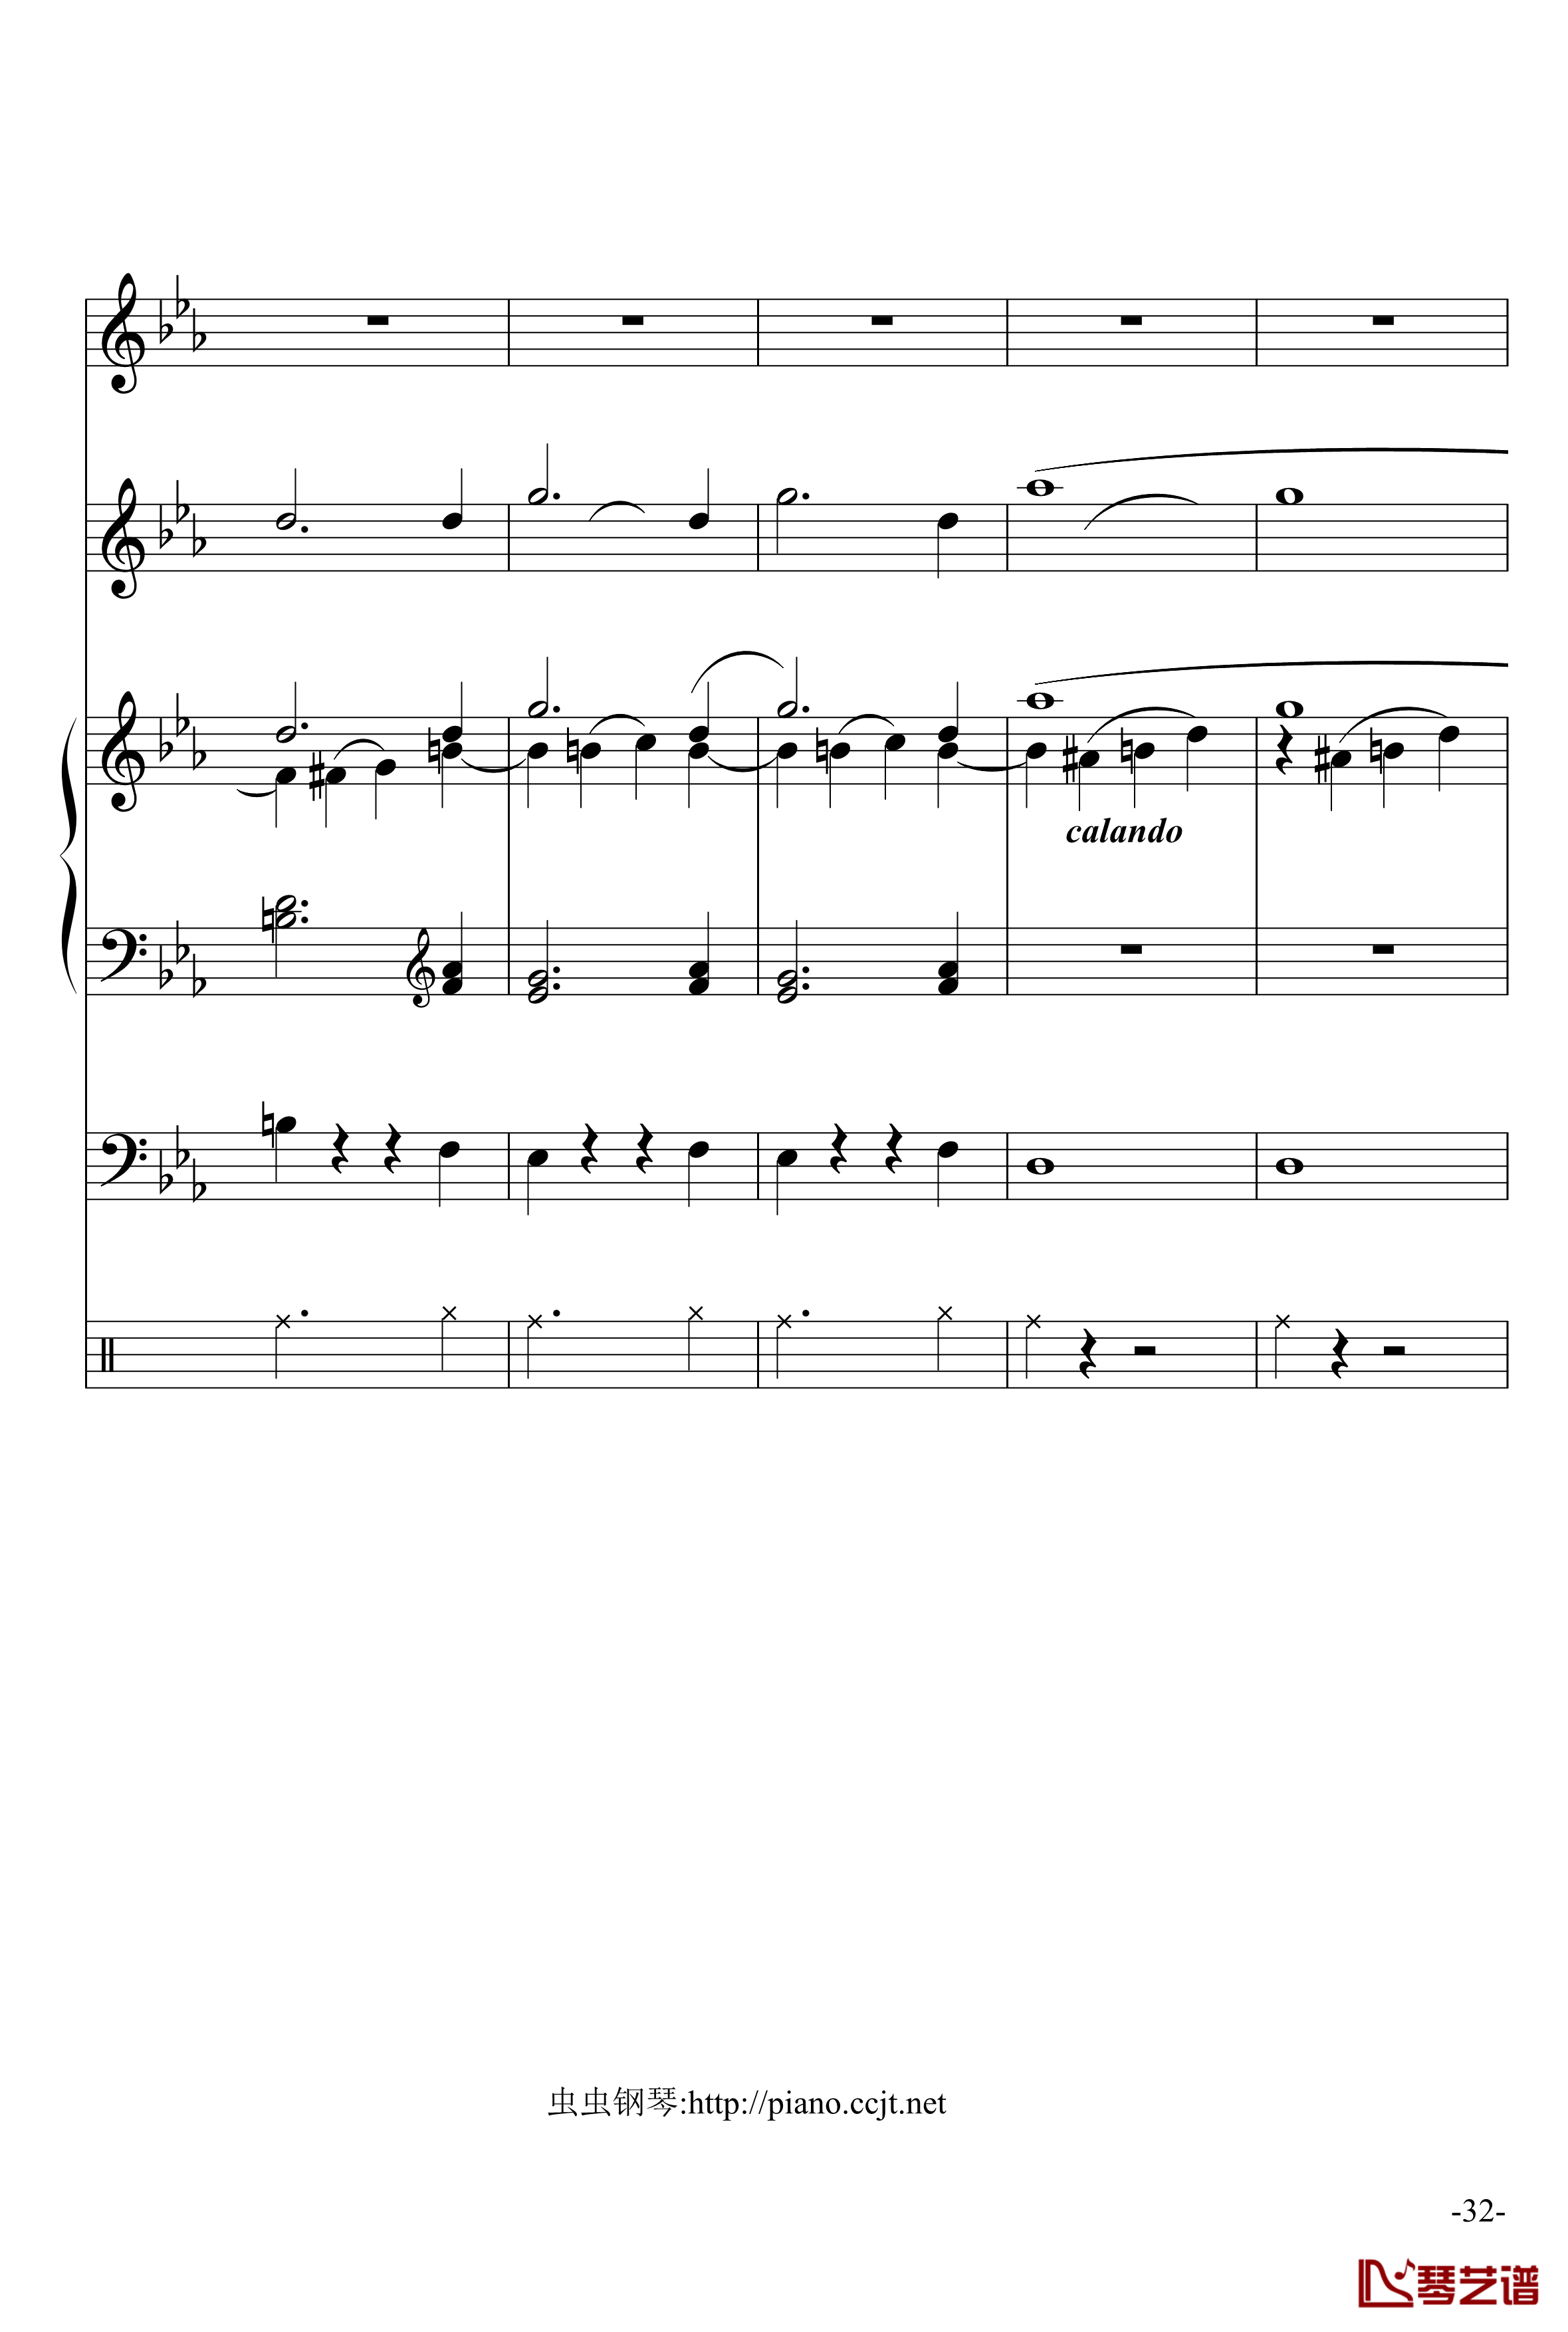 悲怆奏鸣曲钢琴谱-加小乐队-贝多芬-beethoven32